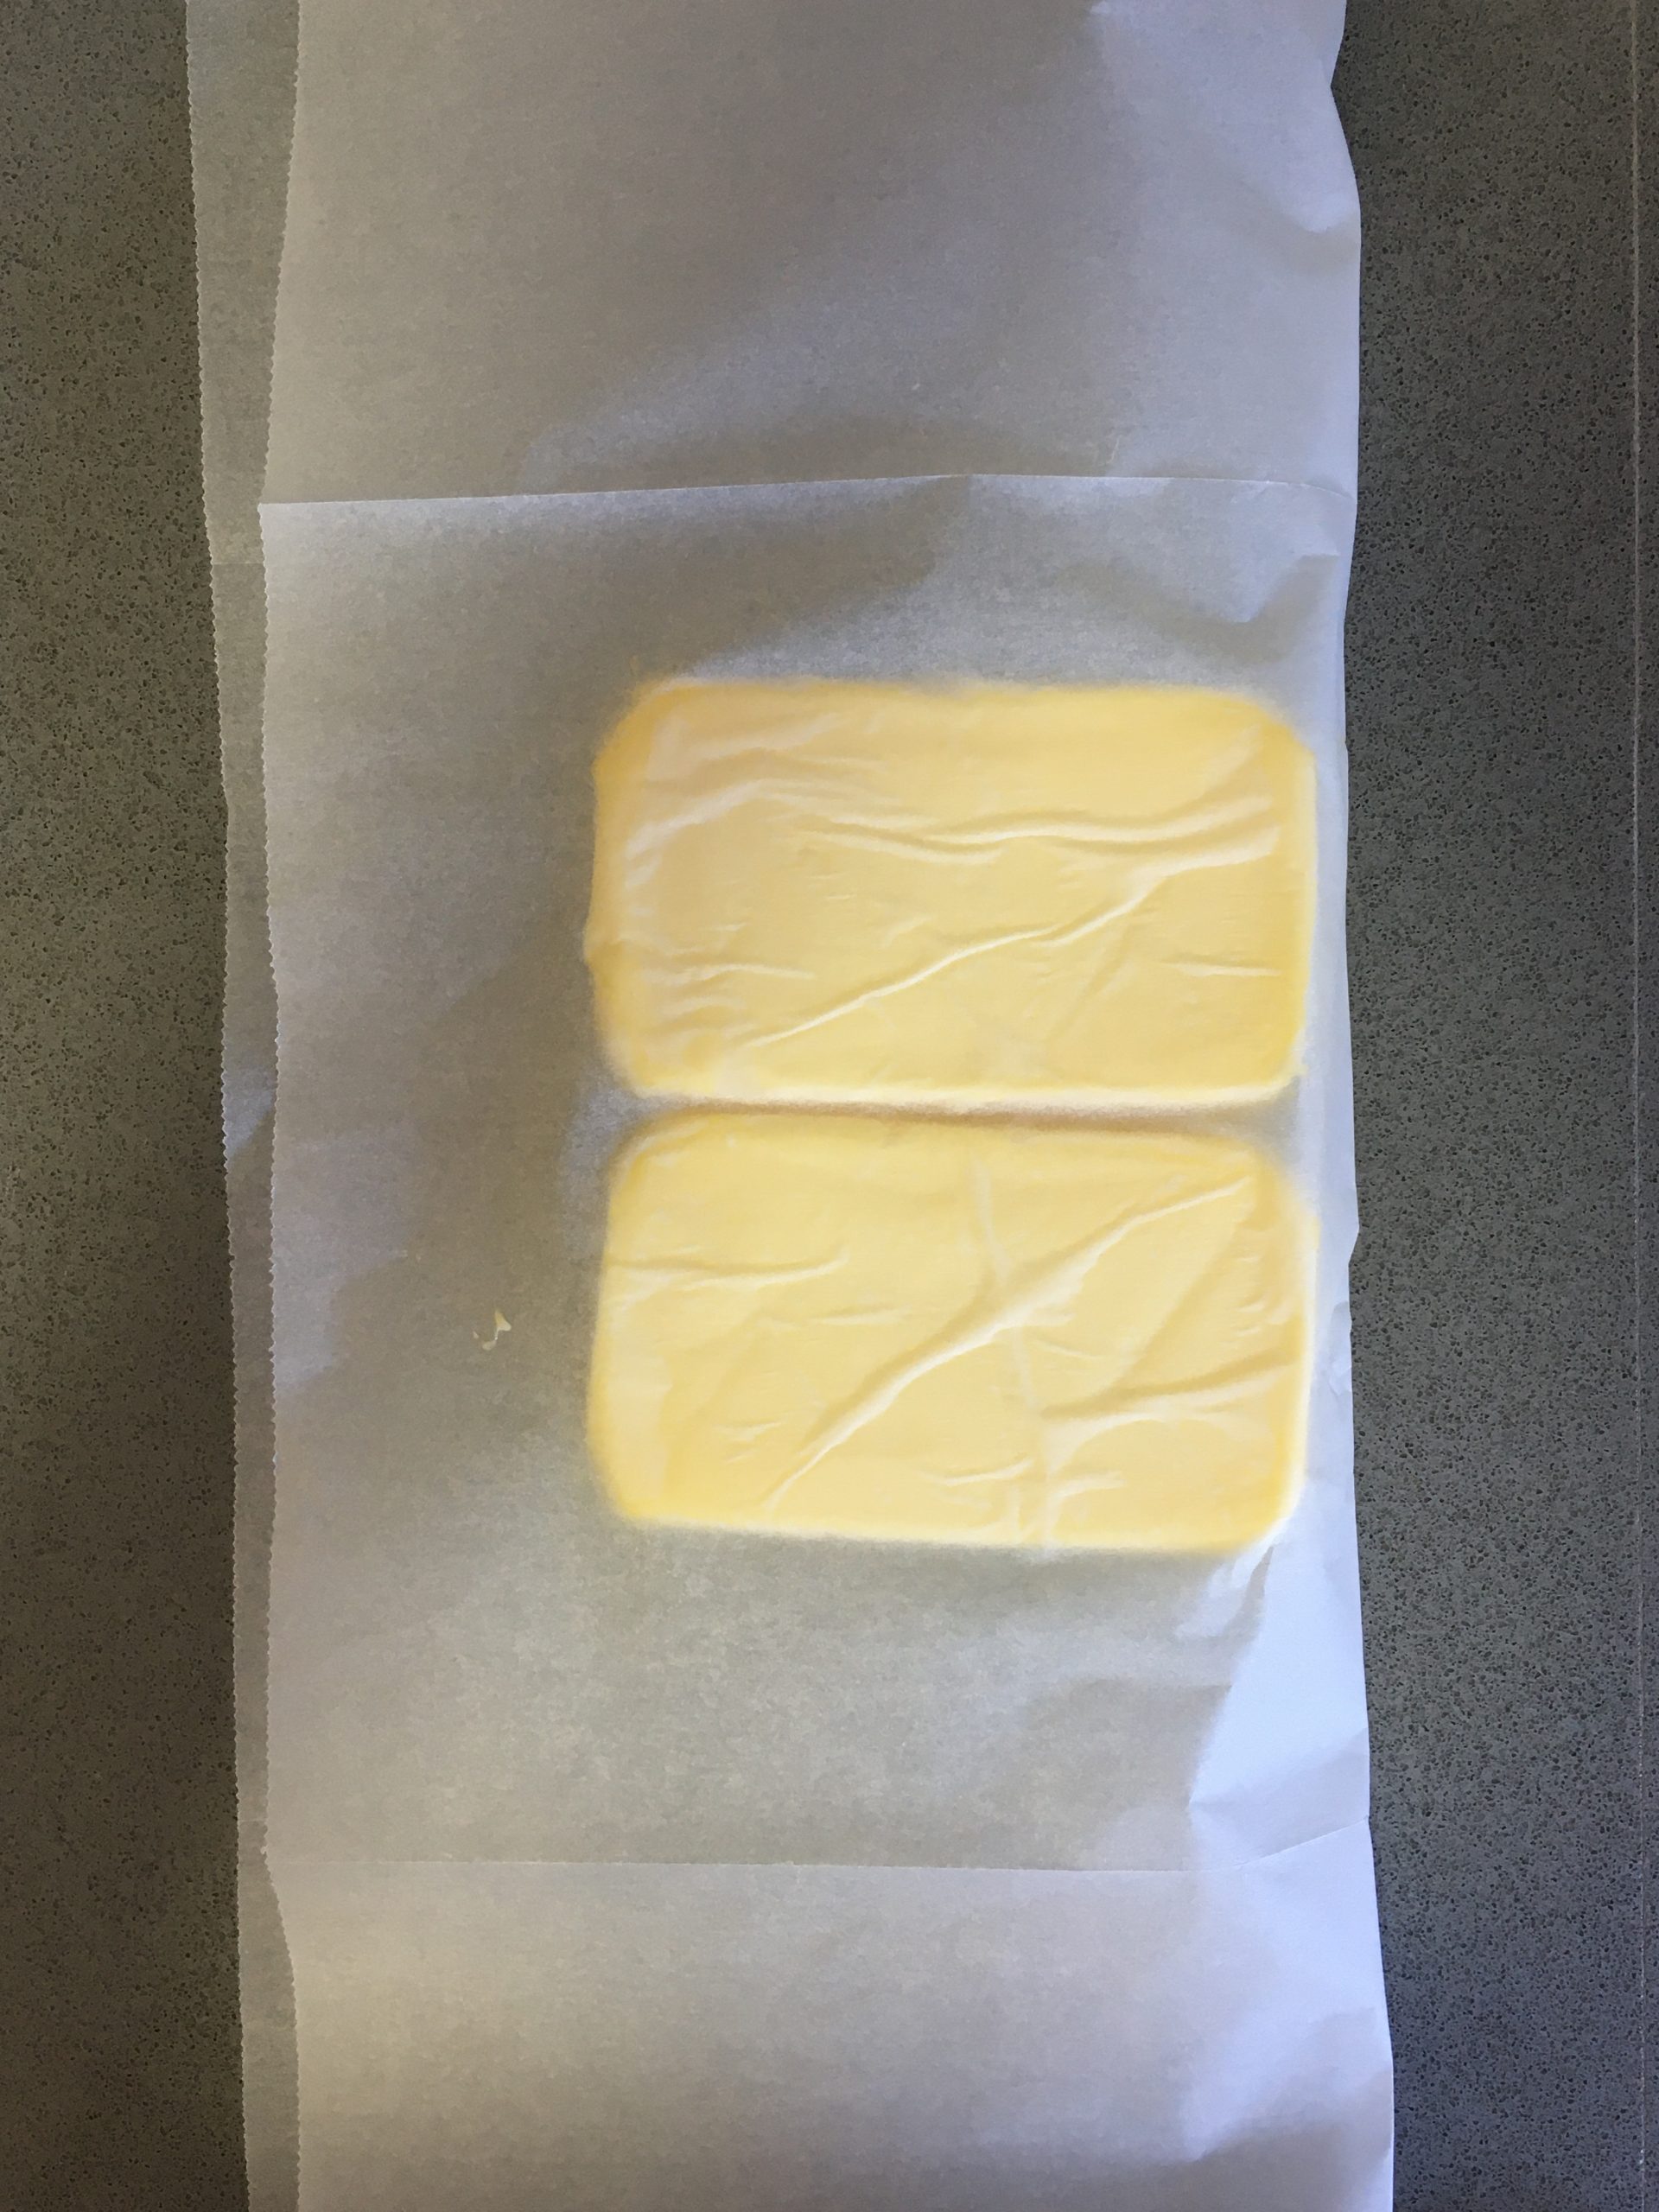 פורסים נייר אפייה ומניחים על מחצית ממנו את בלוק החמאה. מקפלים את צידו השני כך שיכסה את החמאה.